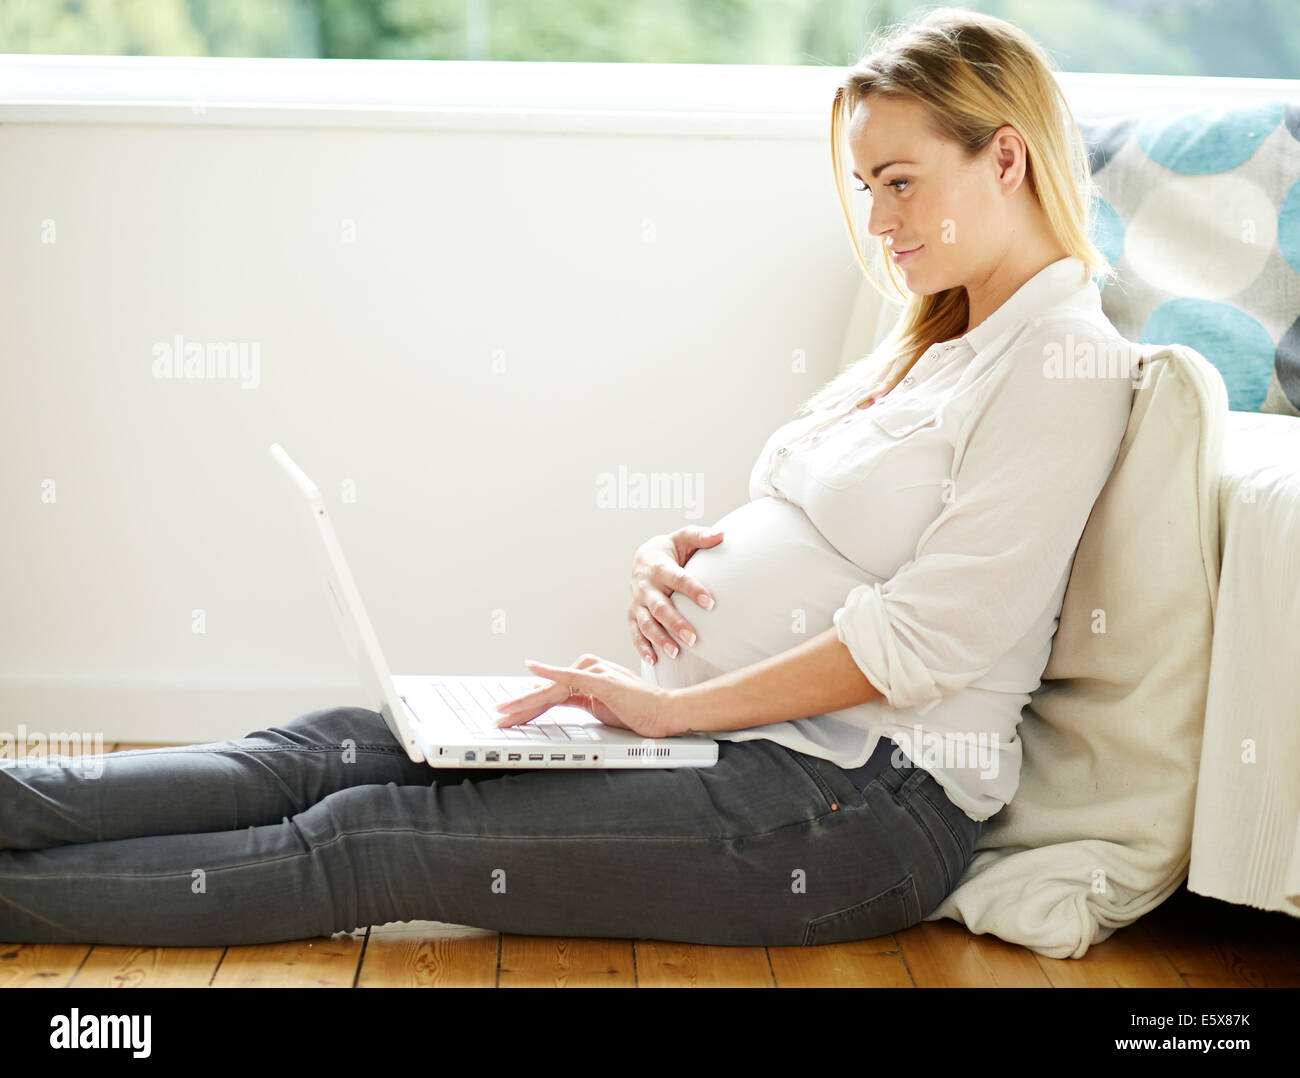 Pregnant woman using laptop computer Banque D'Images